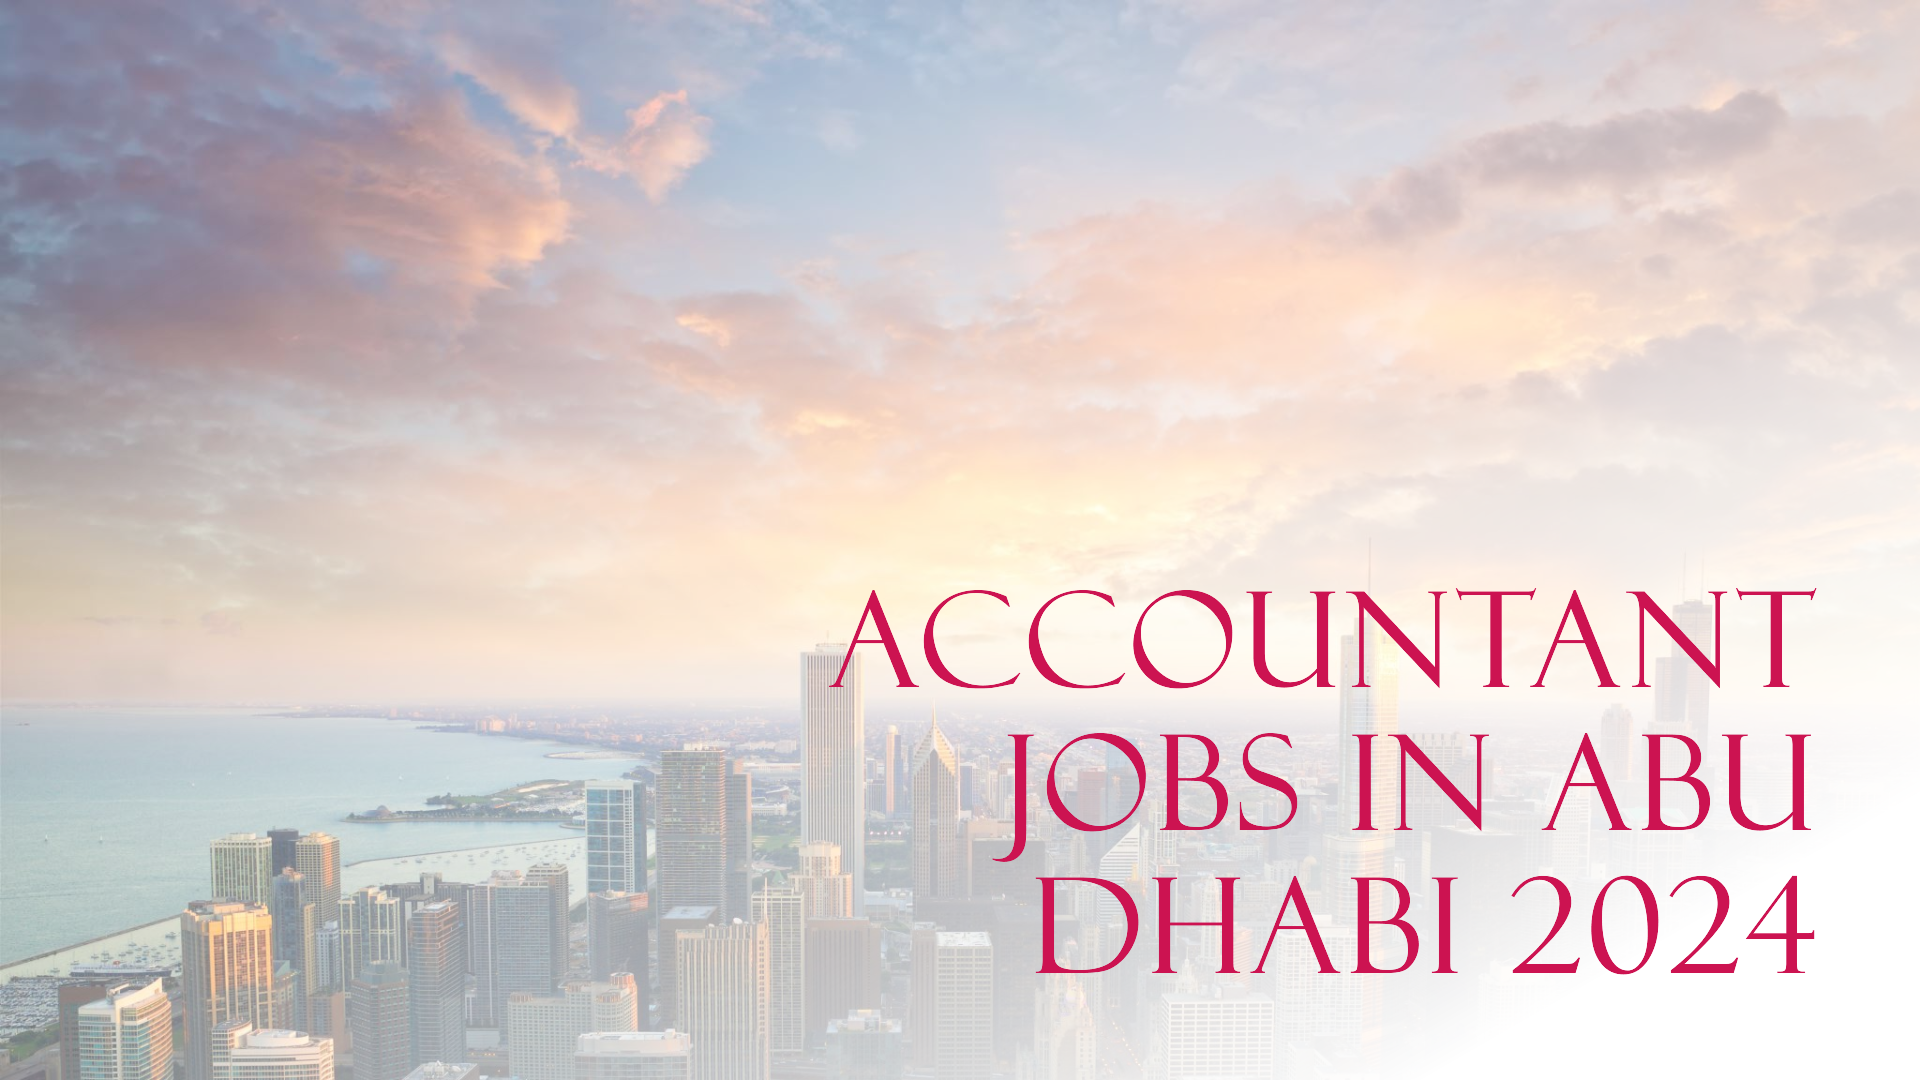 Accountant jobs in Abu Dhabi 2024